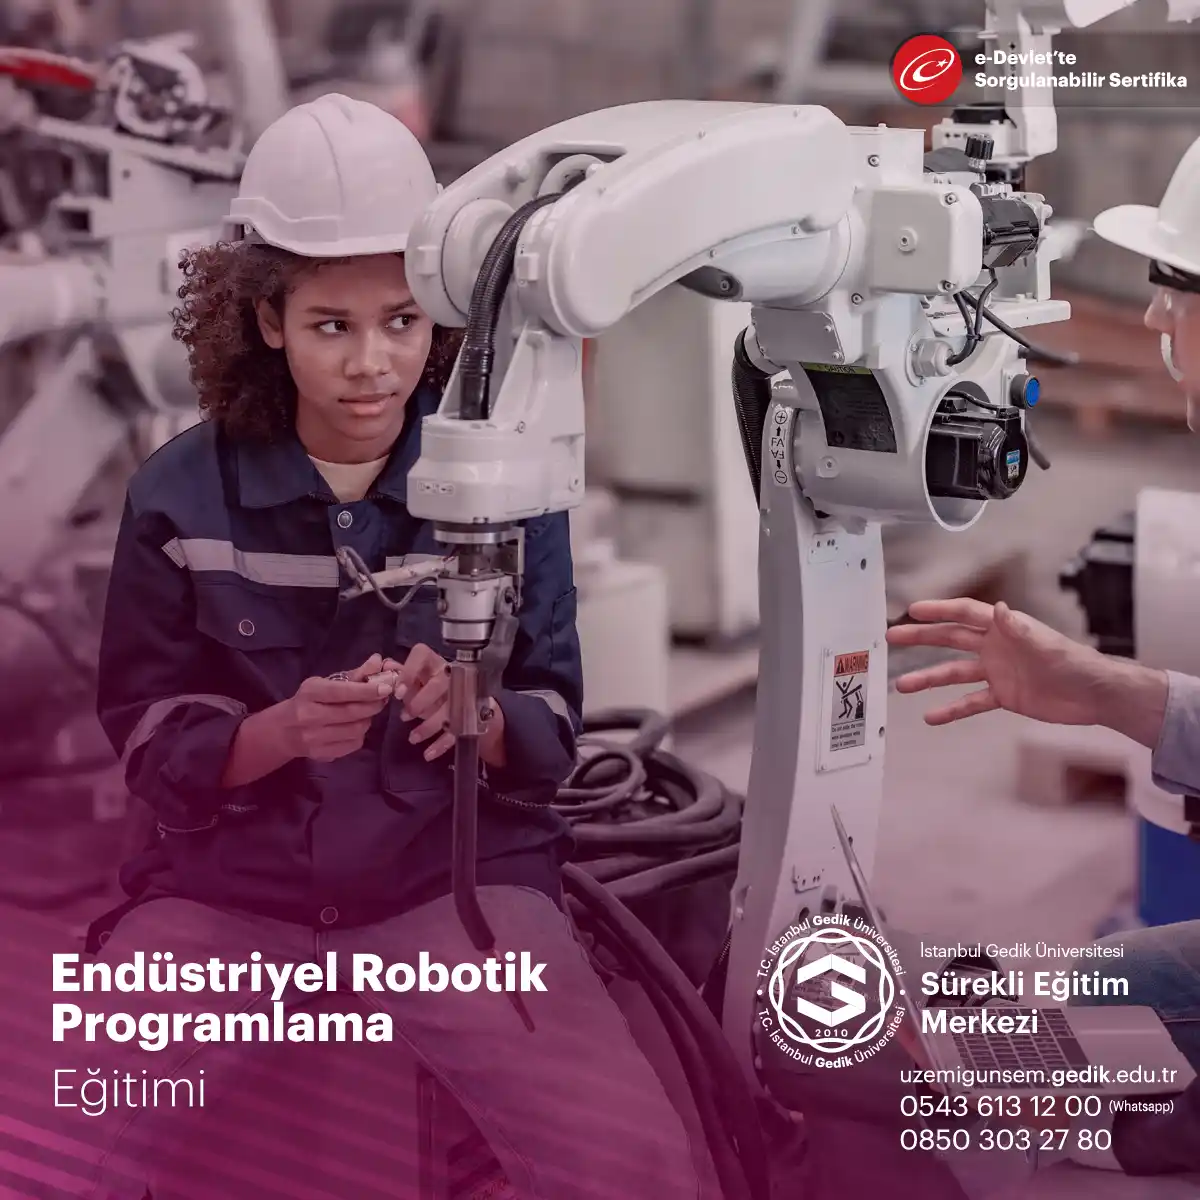 Endüstriyel robotların programlanması ve yönetilmesi konusunda katılımcılara bilgi ve beceri kazandıran bir eğitim programıdır.